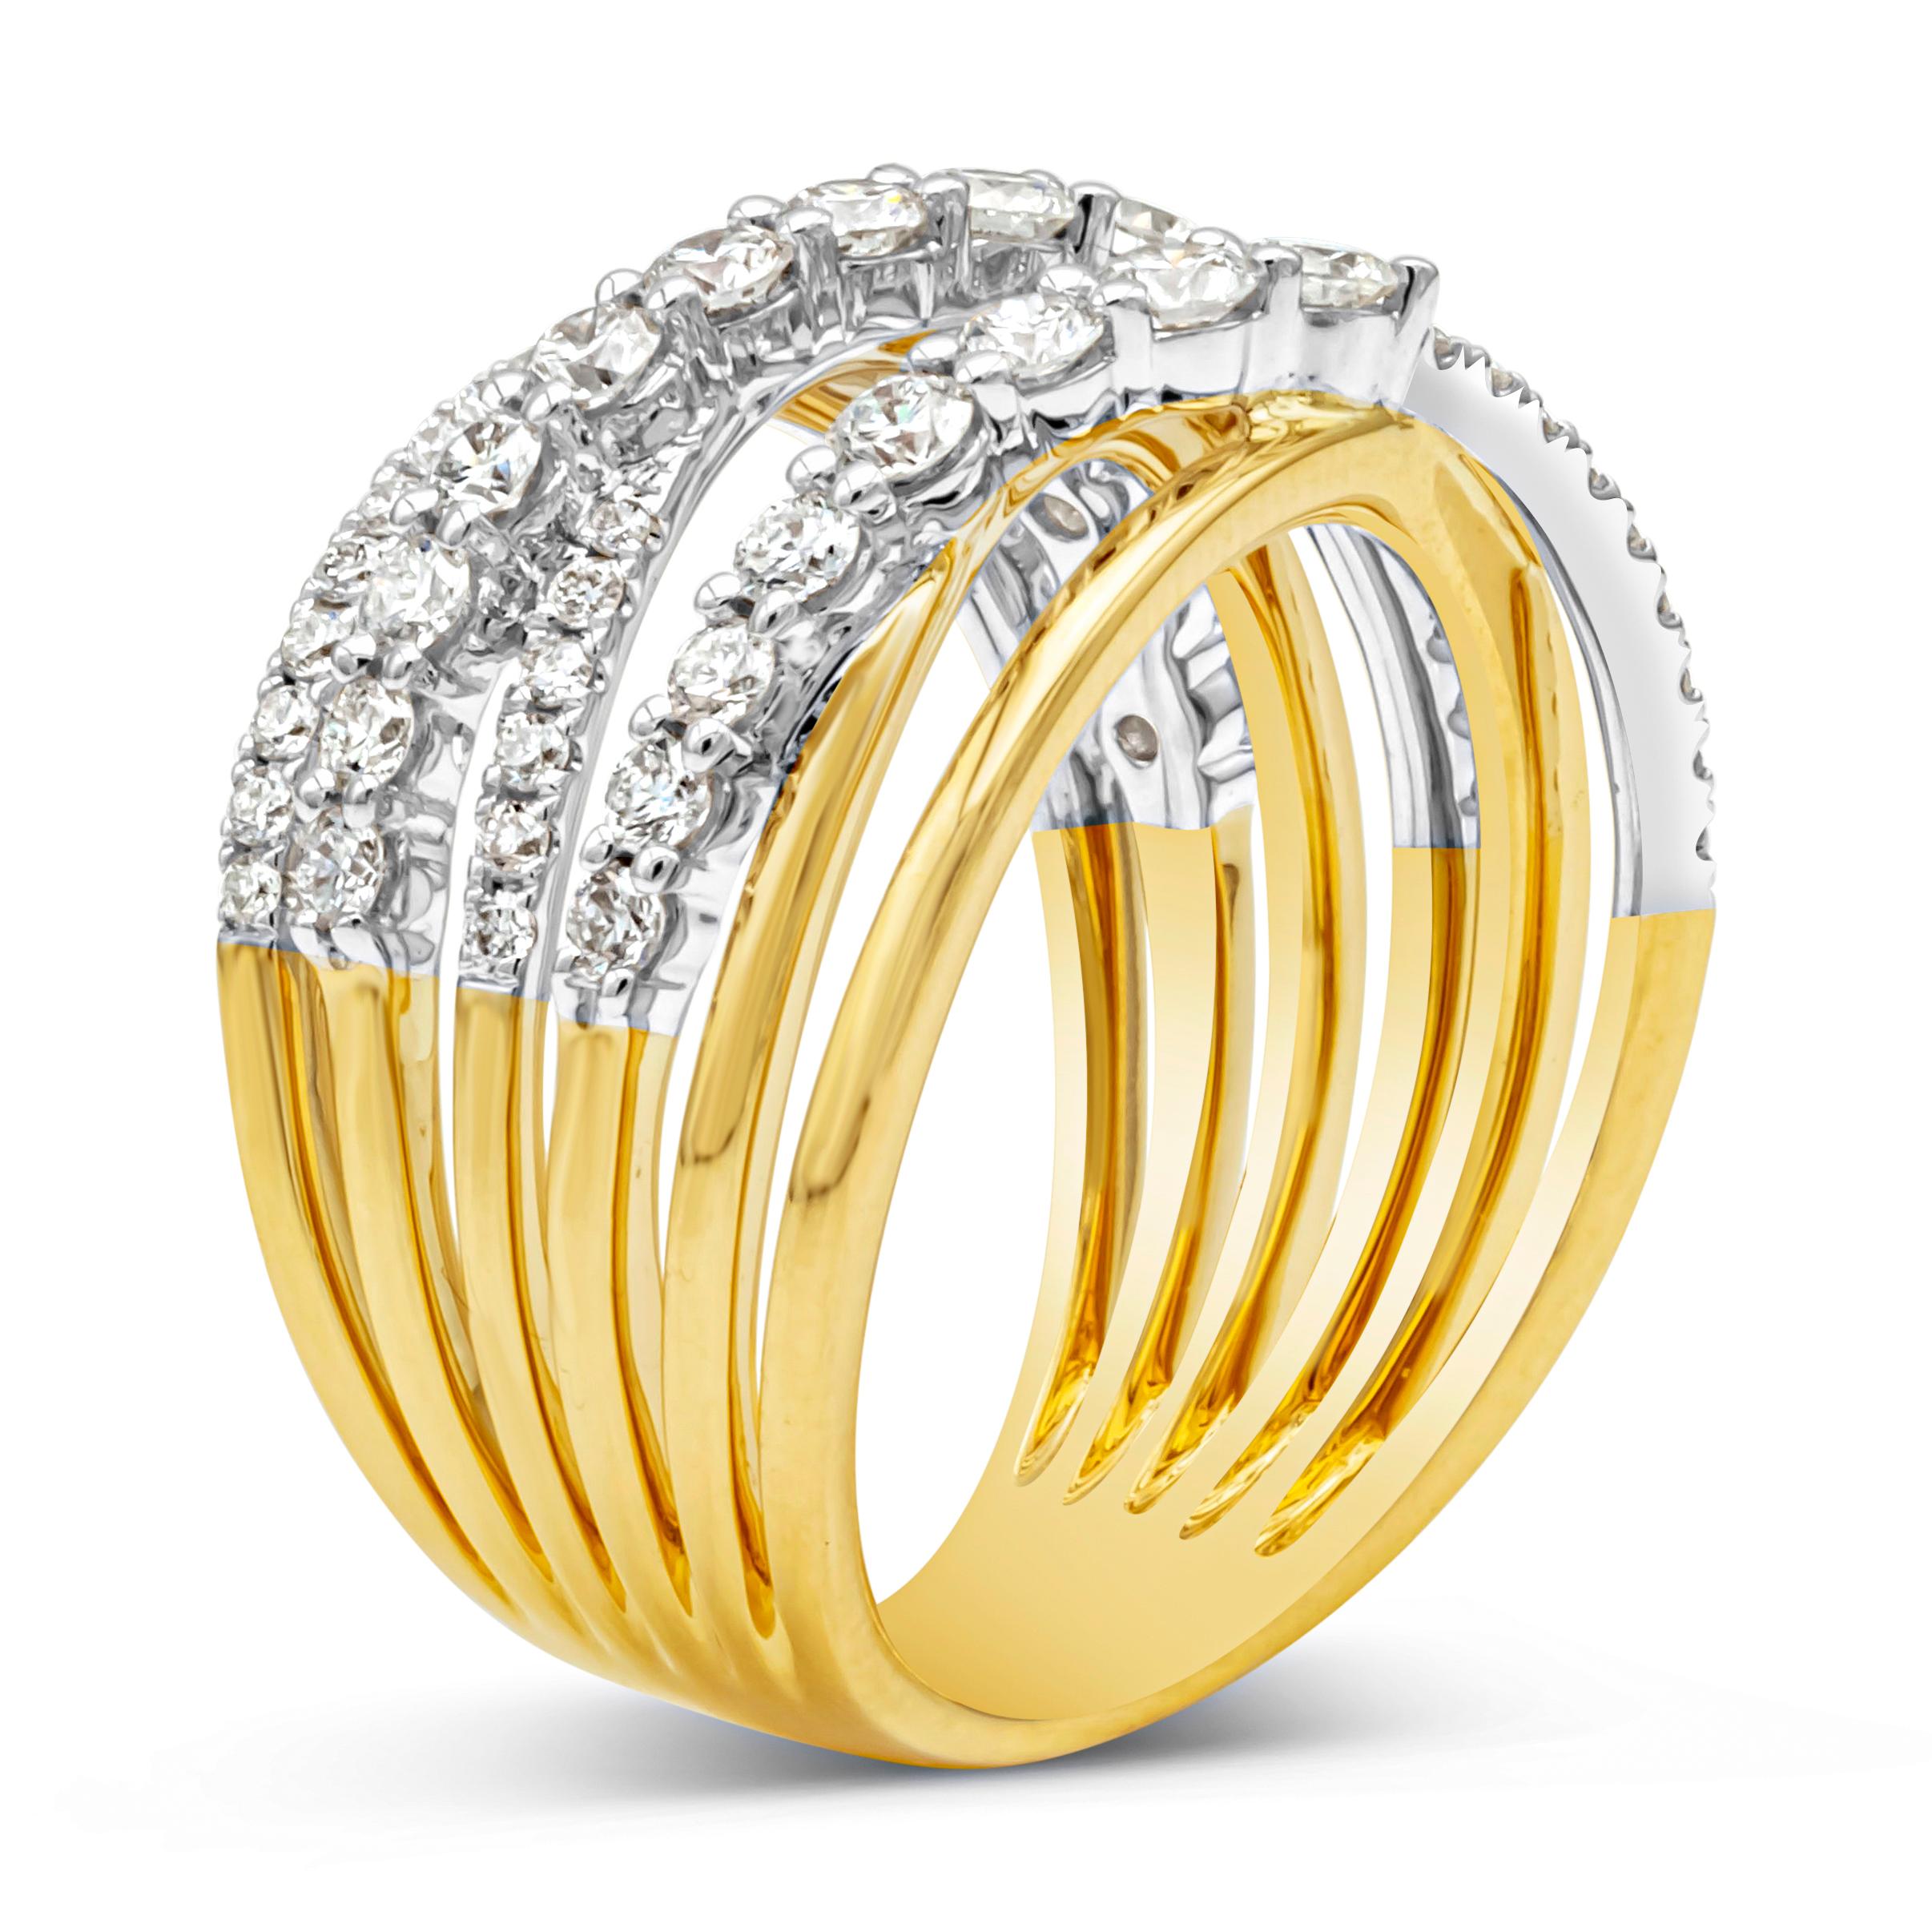 Merveilleuse bague de mode présentant un anneau galaxie à six rangs embelli de diamants ronds brillants pesant 1,18 carats au total, de couleur F-G et de pureté VS-SI1. Fabriqué avec de l'or blanc et jaune 18K, Taille 6.5 US

Style disponible dans